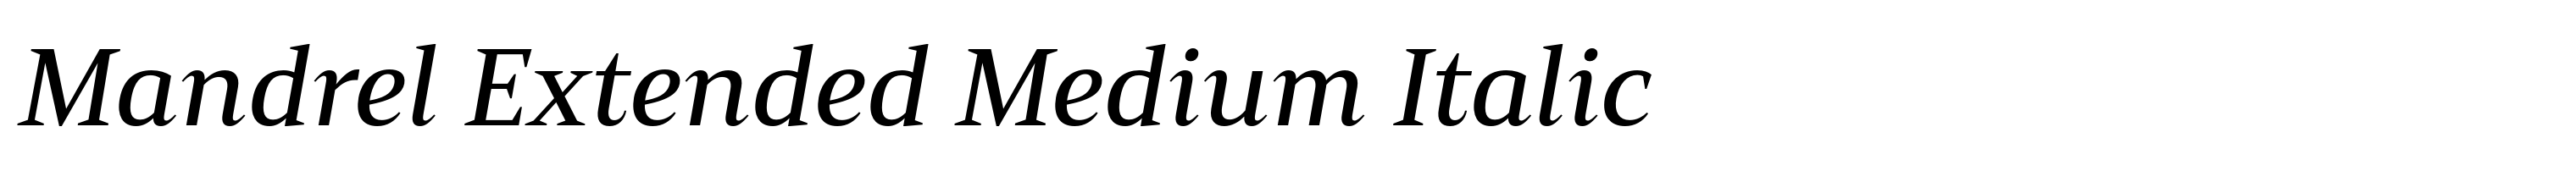 Mandrel Extended Medium Italic